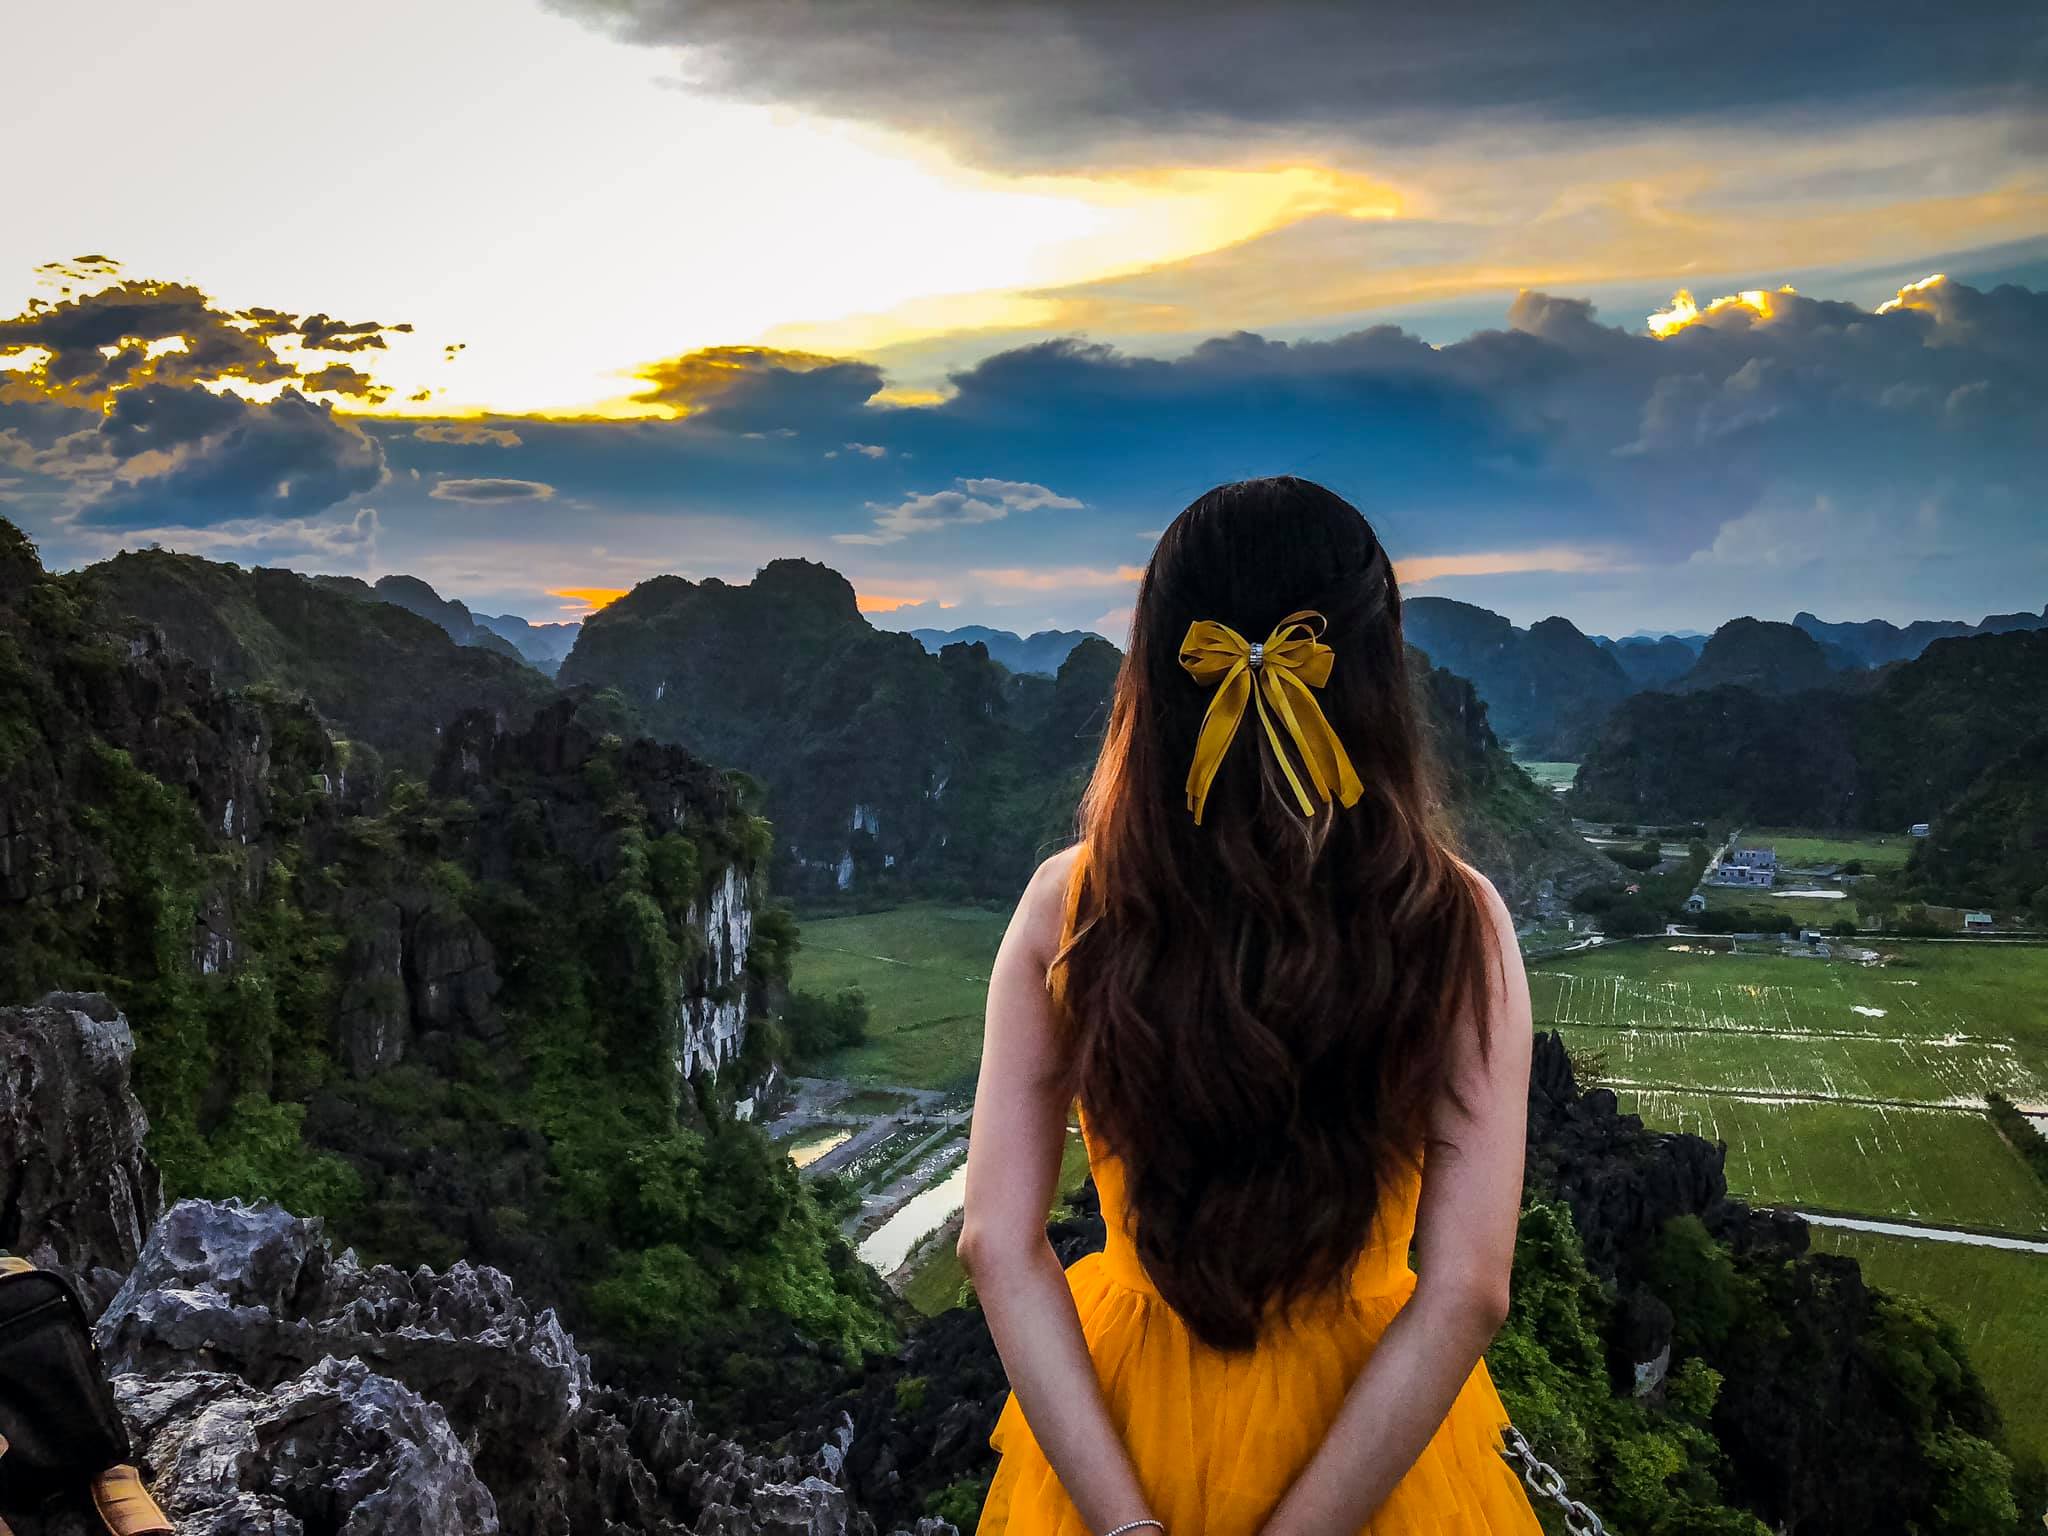 Du lịch Ninh Bình là một trong những điểm đến hấp dẫn nhất ở miền Bắc Việt Nam. Đến đây, bạn sẽ được tham quan các danh thắng thiên nhiên đẹp như Hang Múa, Tràng An hay Tam Cốc. Hơn nữa, Ninh Bình cũng là nơi chụp ảnh đẹp cho những ai yêu thích nhiếp ảnh. Hãy đến đây và khám phá vẻ đẹp của miền đất cảnh quan độc đáo này.